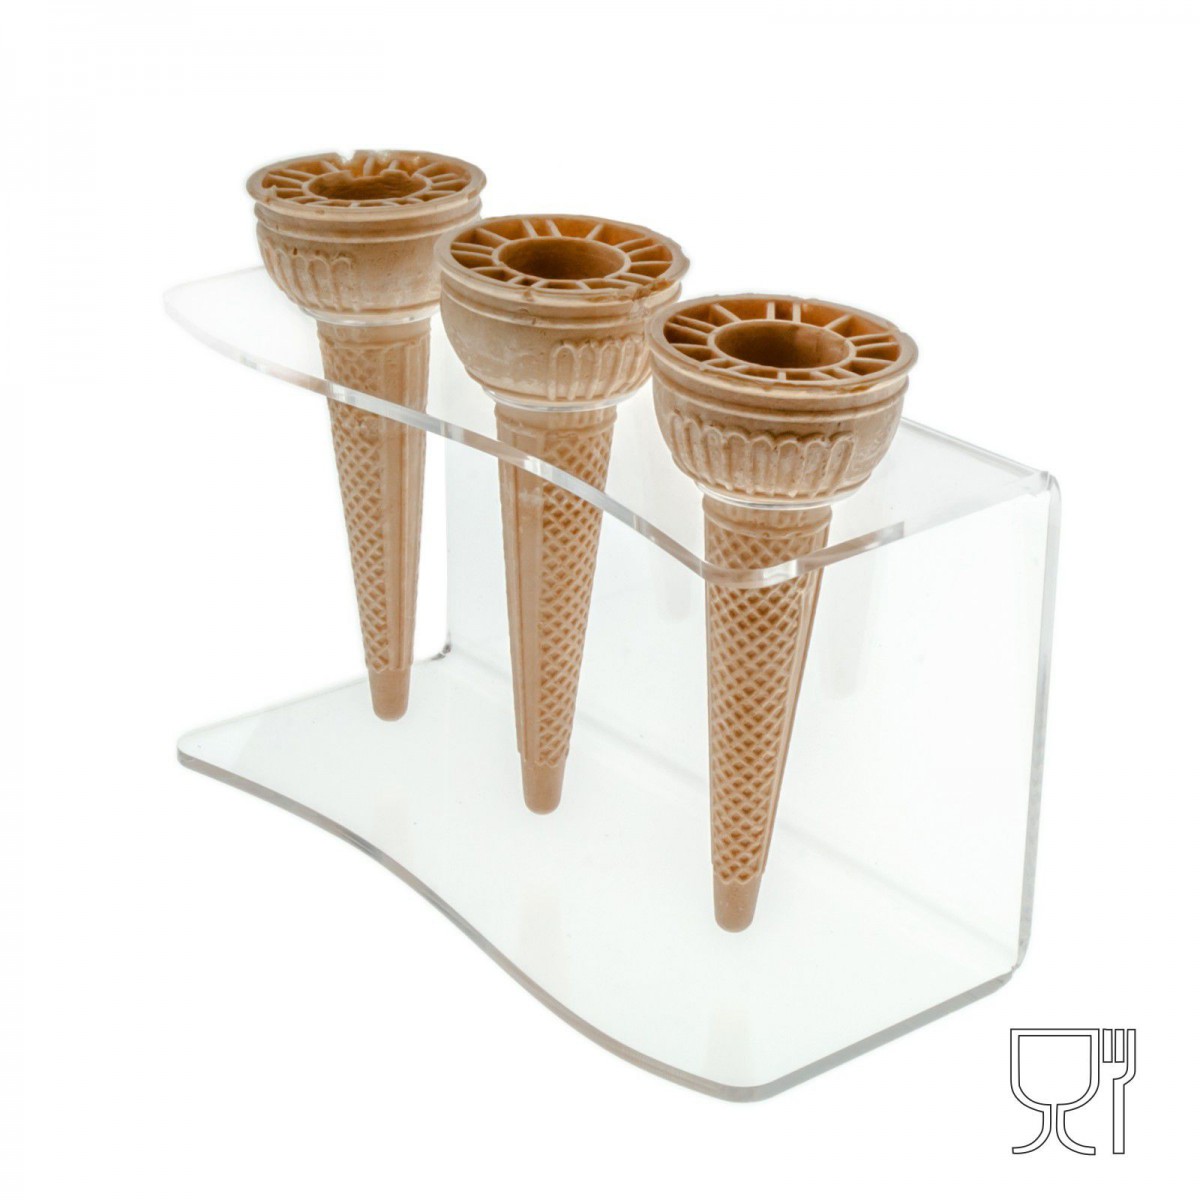 Expositor de mostrador para conos de helado en plexiglás transparente